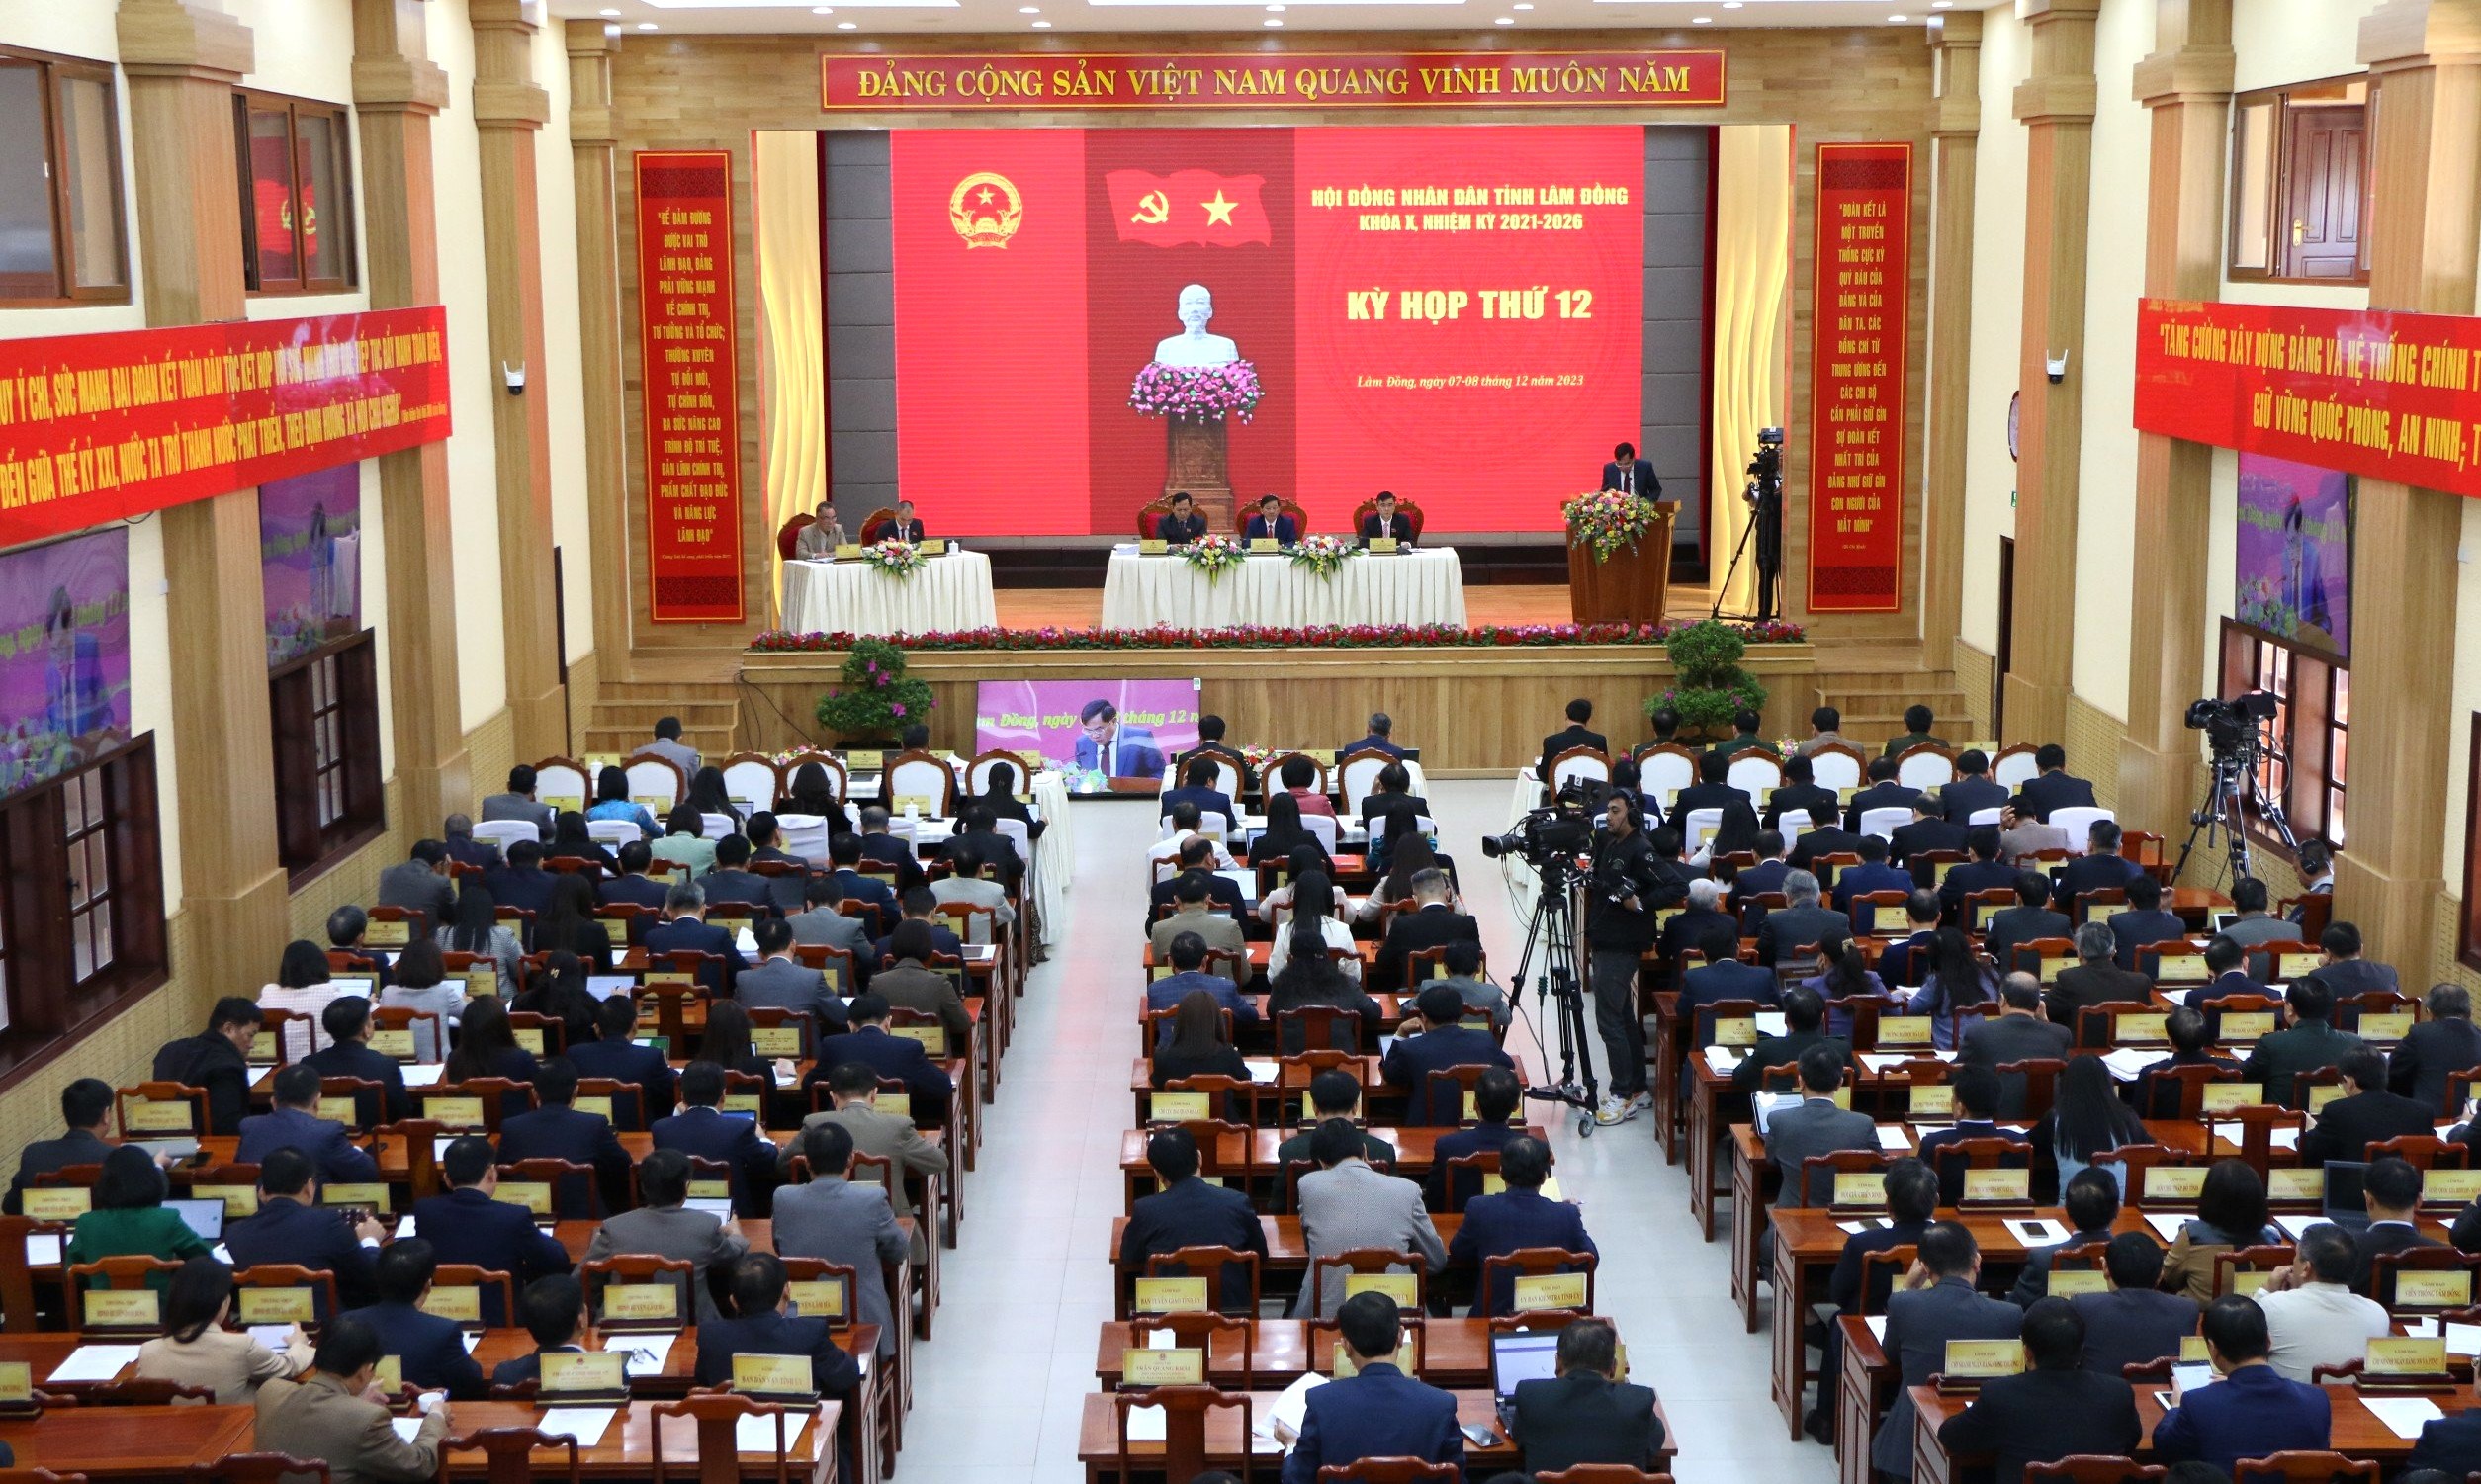 40 năm Báo NTNN: Từ loạt bài của Báo, HĐND tỉnh Lâm Đồng đã thay đổi chính sách về Chi hội trưởng nông dân- Ảnh 1.